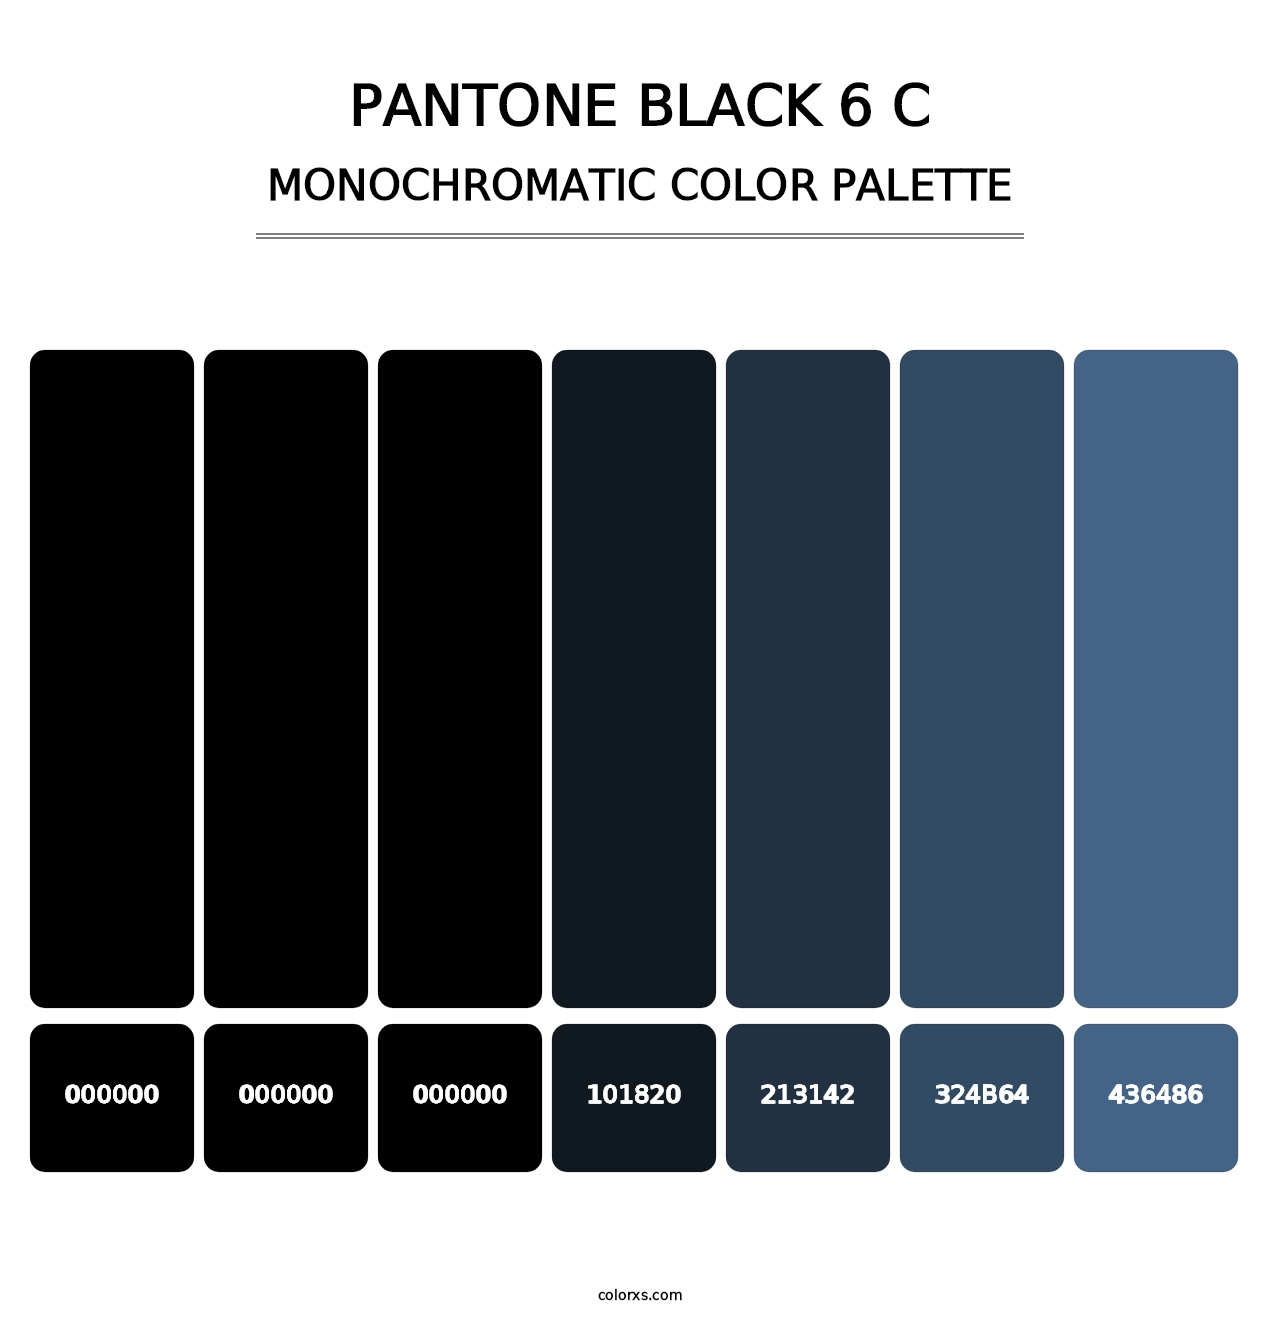 PANTONE Black 6 C - Monochromatic Color Palette